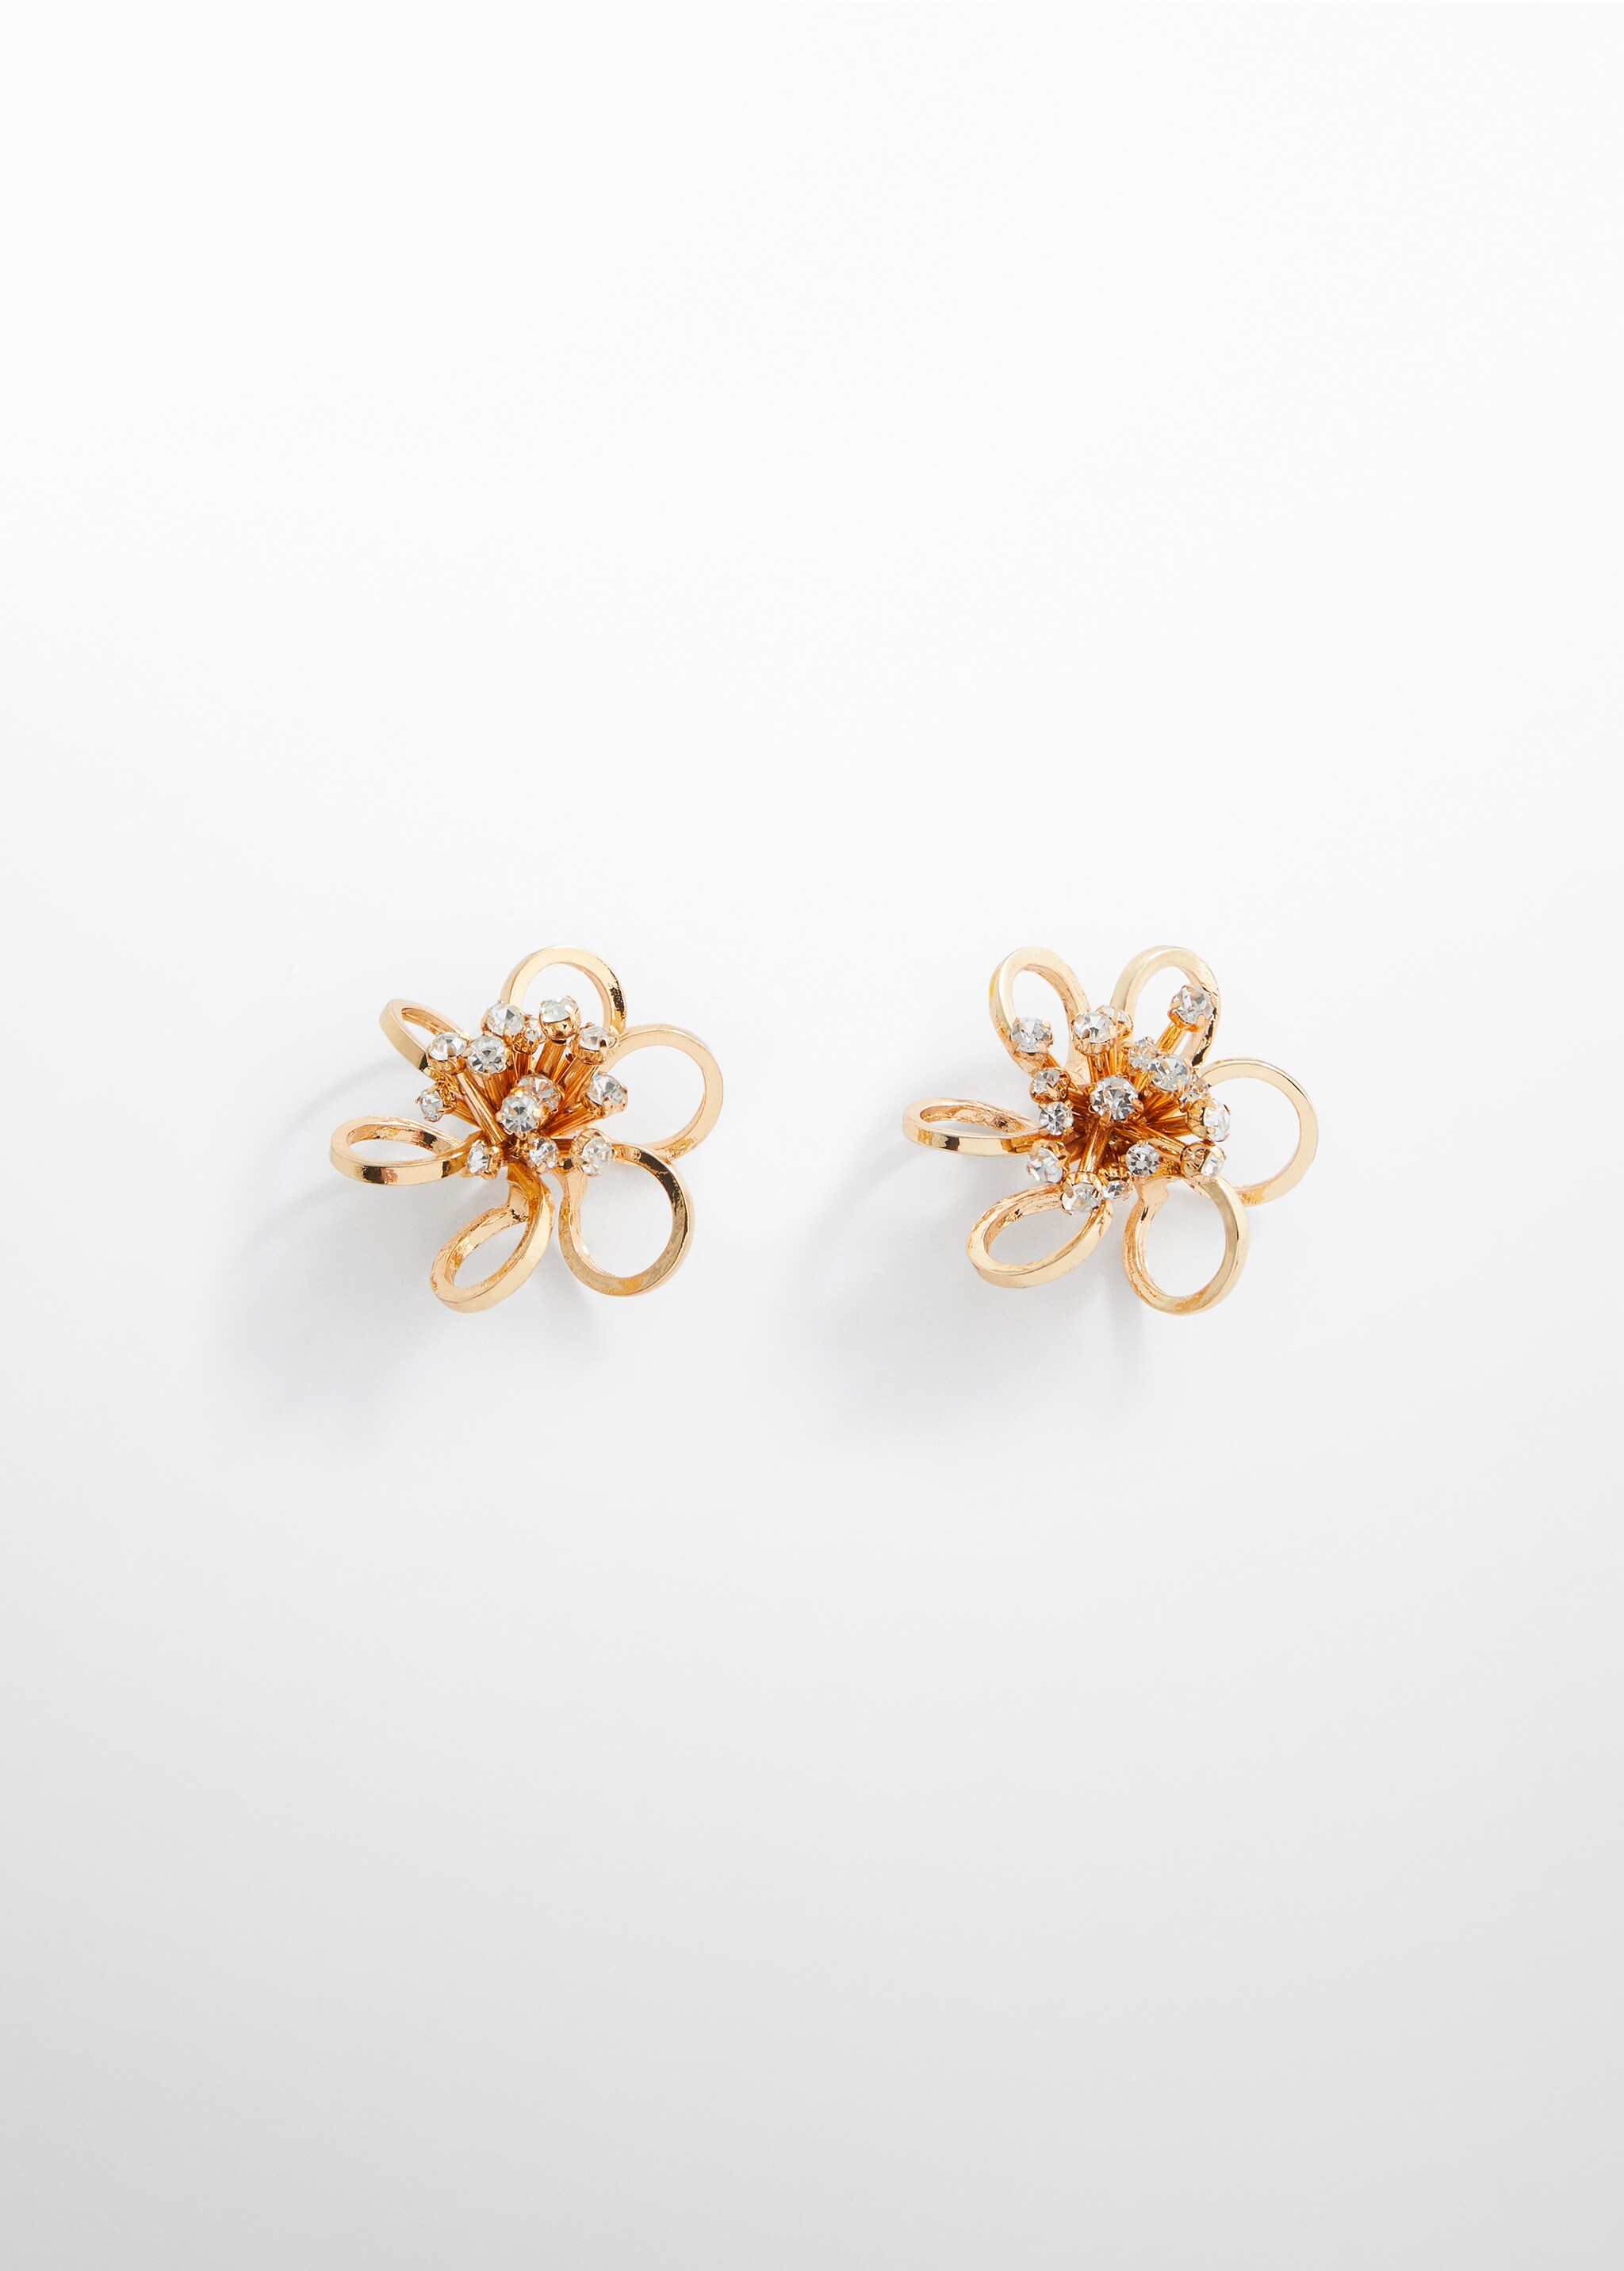 Boucles d’oreilles cristaux fleur - Article sans modèle